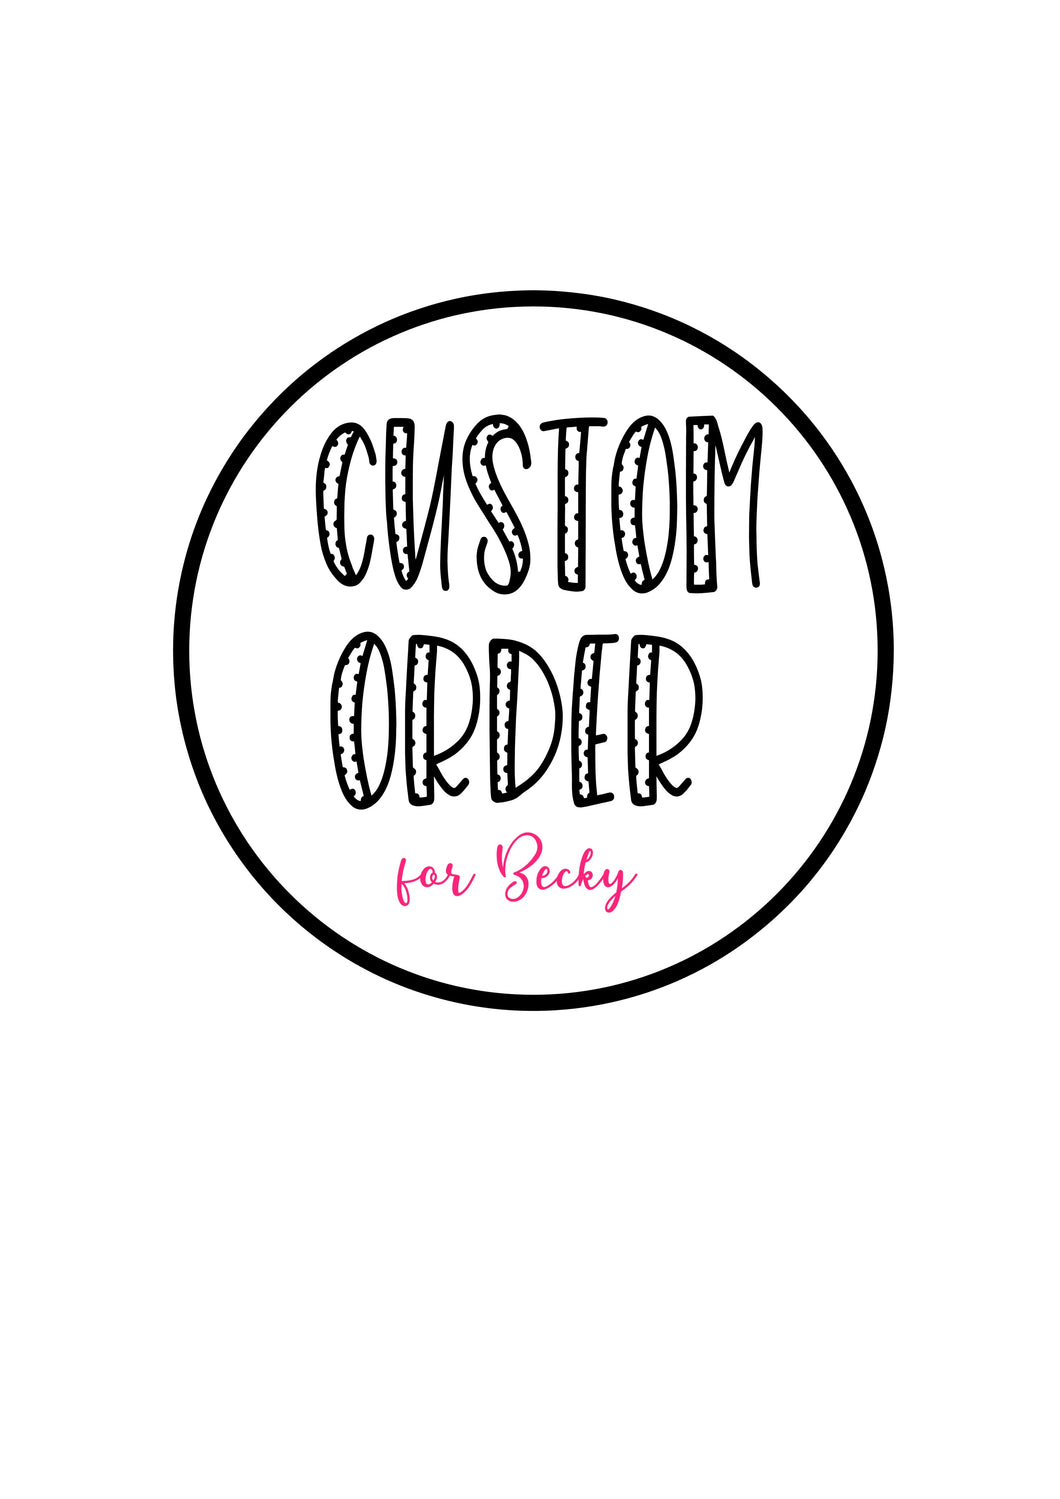 Custom order for Becky